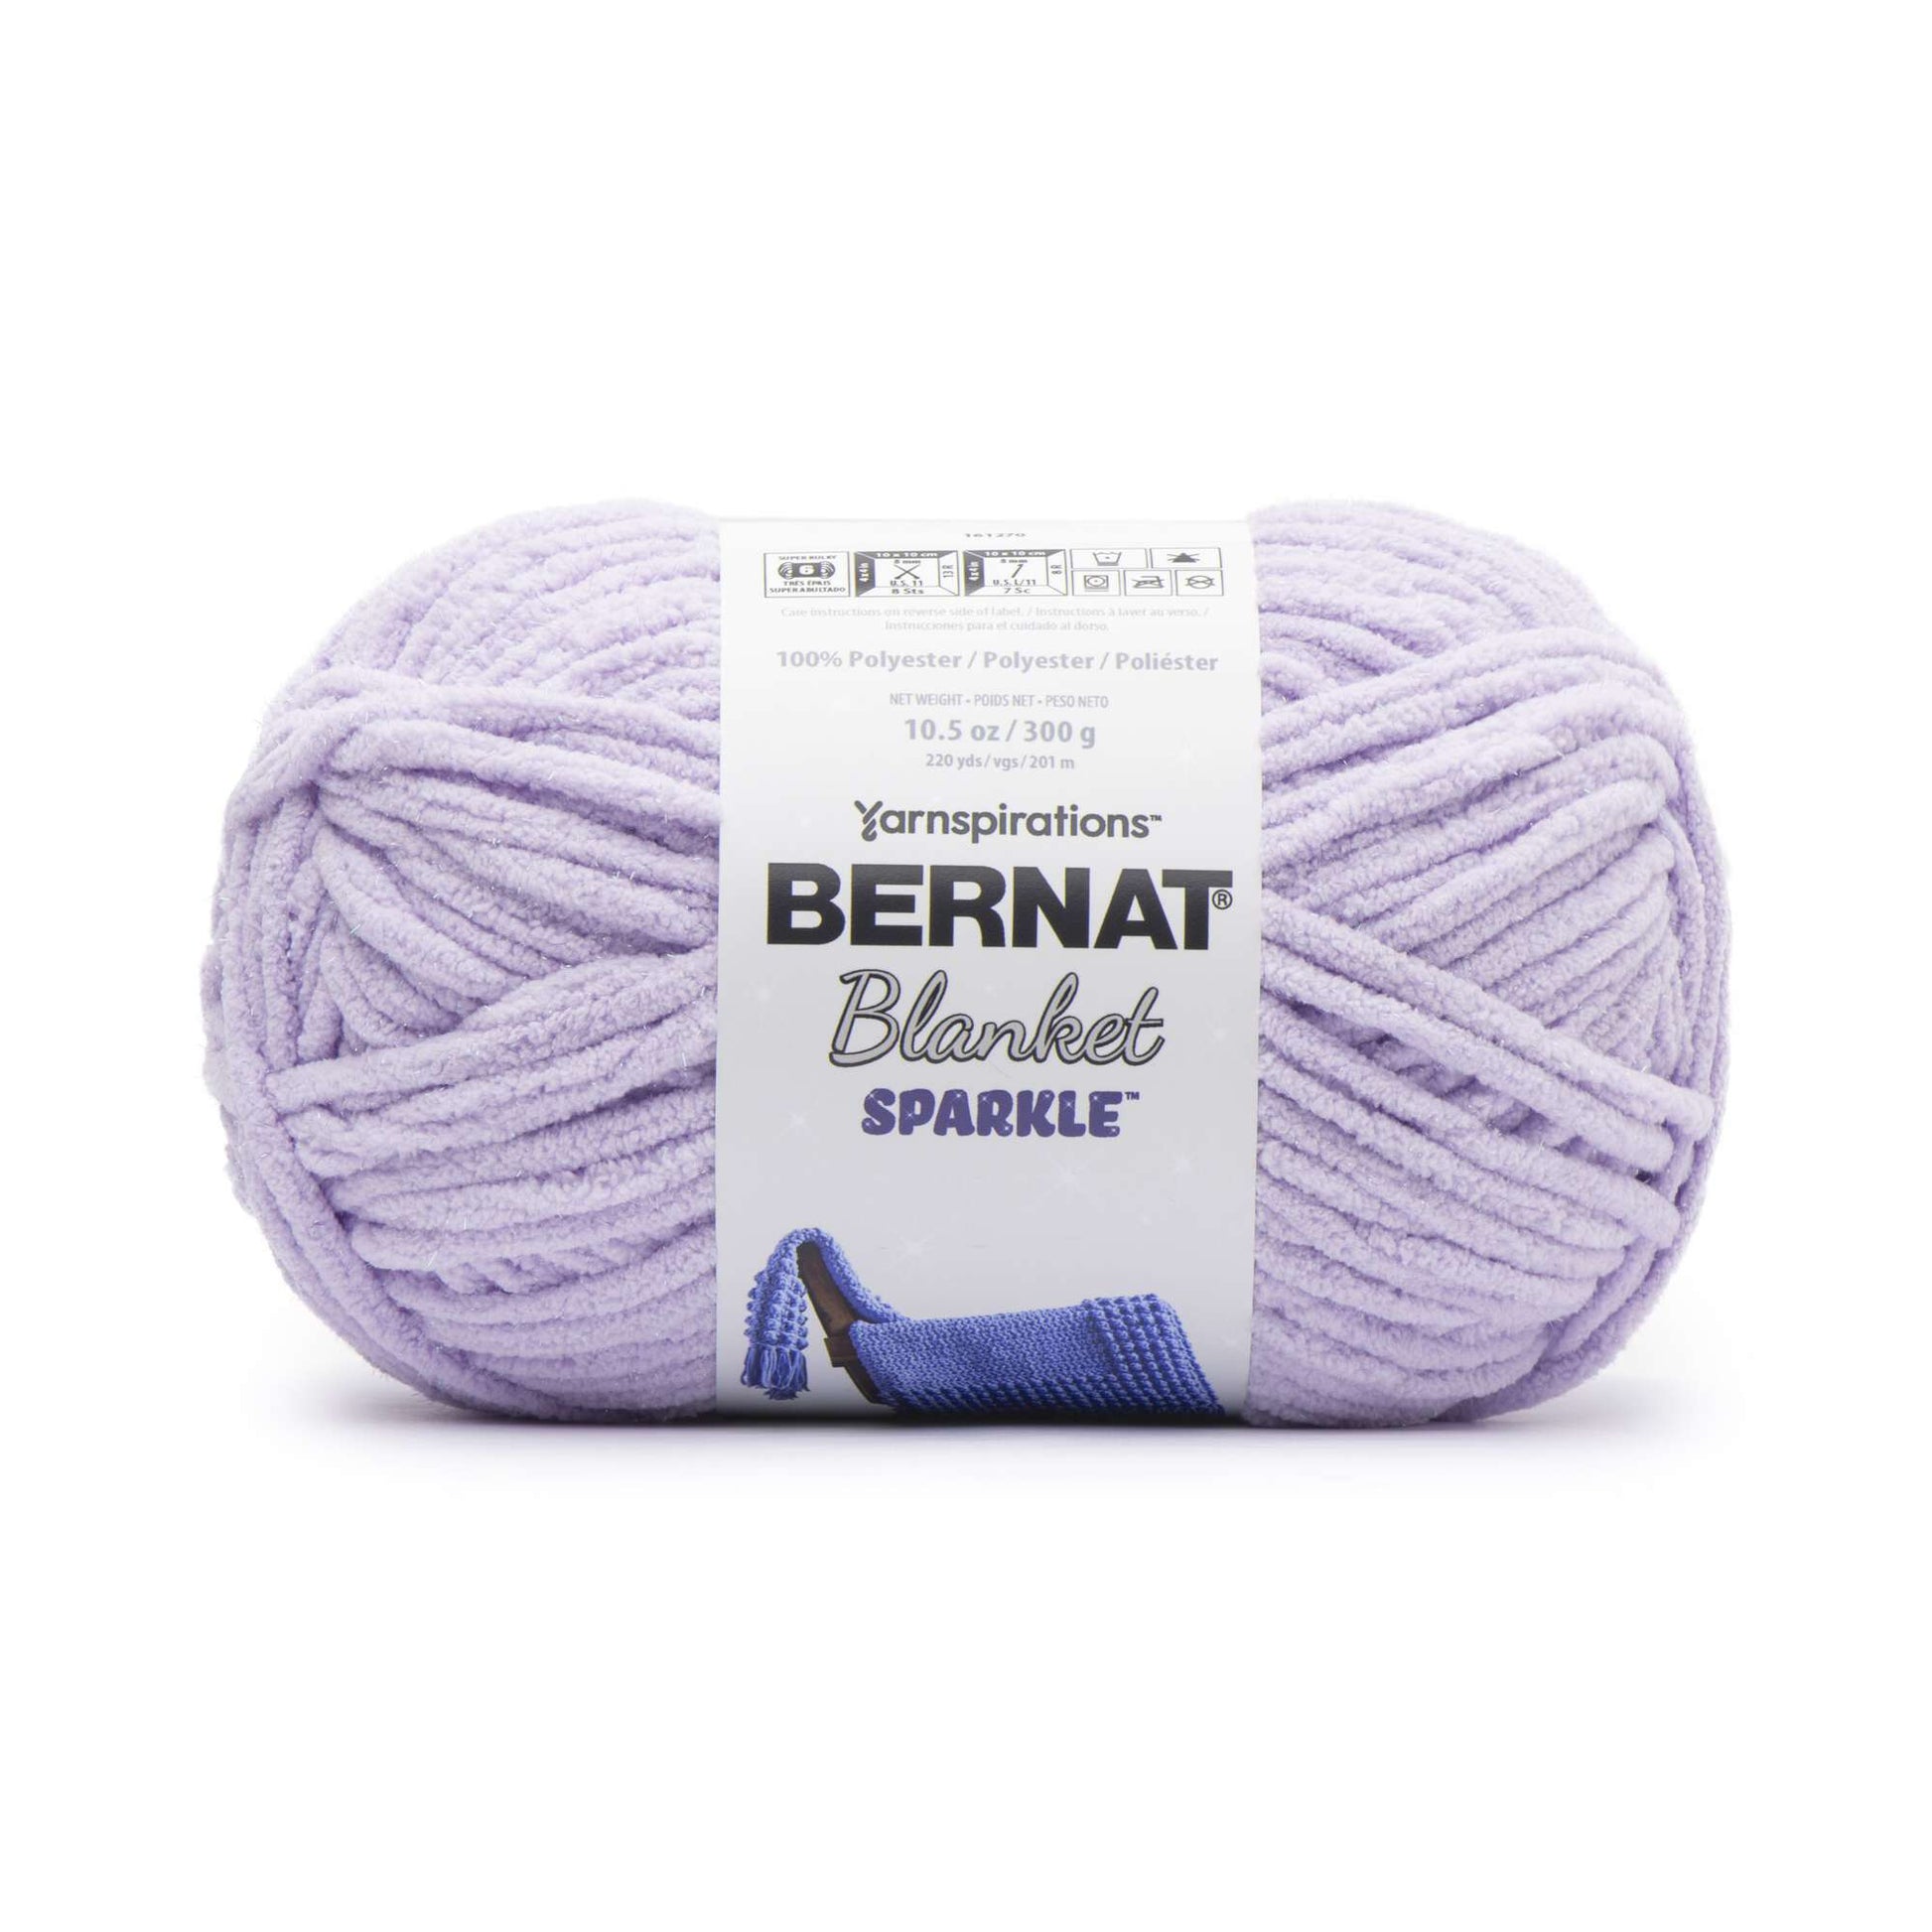 Bernat Blanket Sparkle Yarn (300g/10.5oz)